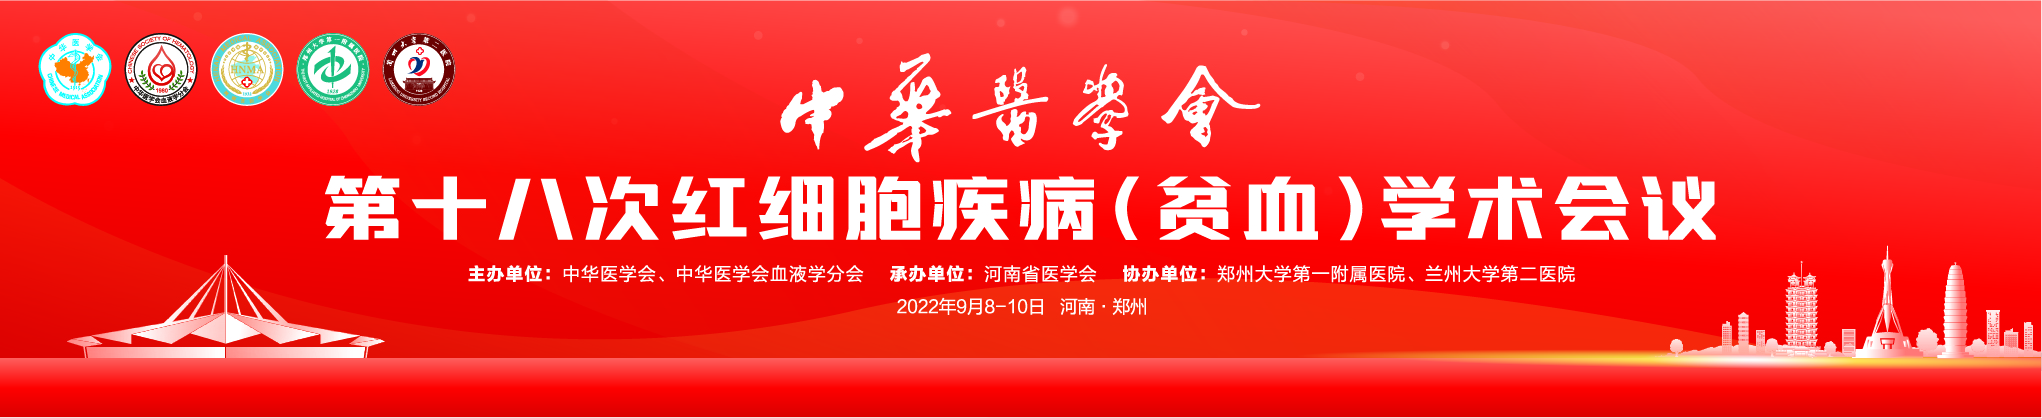 中华医学会第十八届全国红细胞疾病（贫血）学术会议